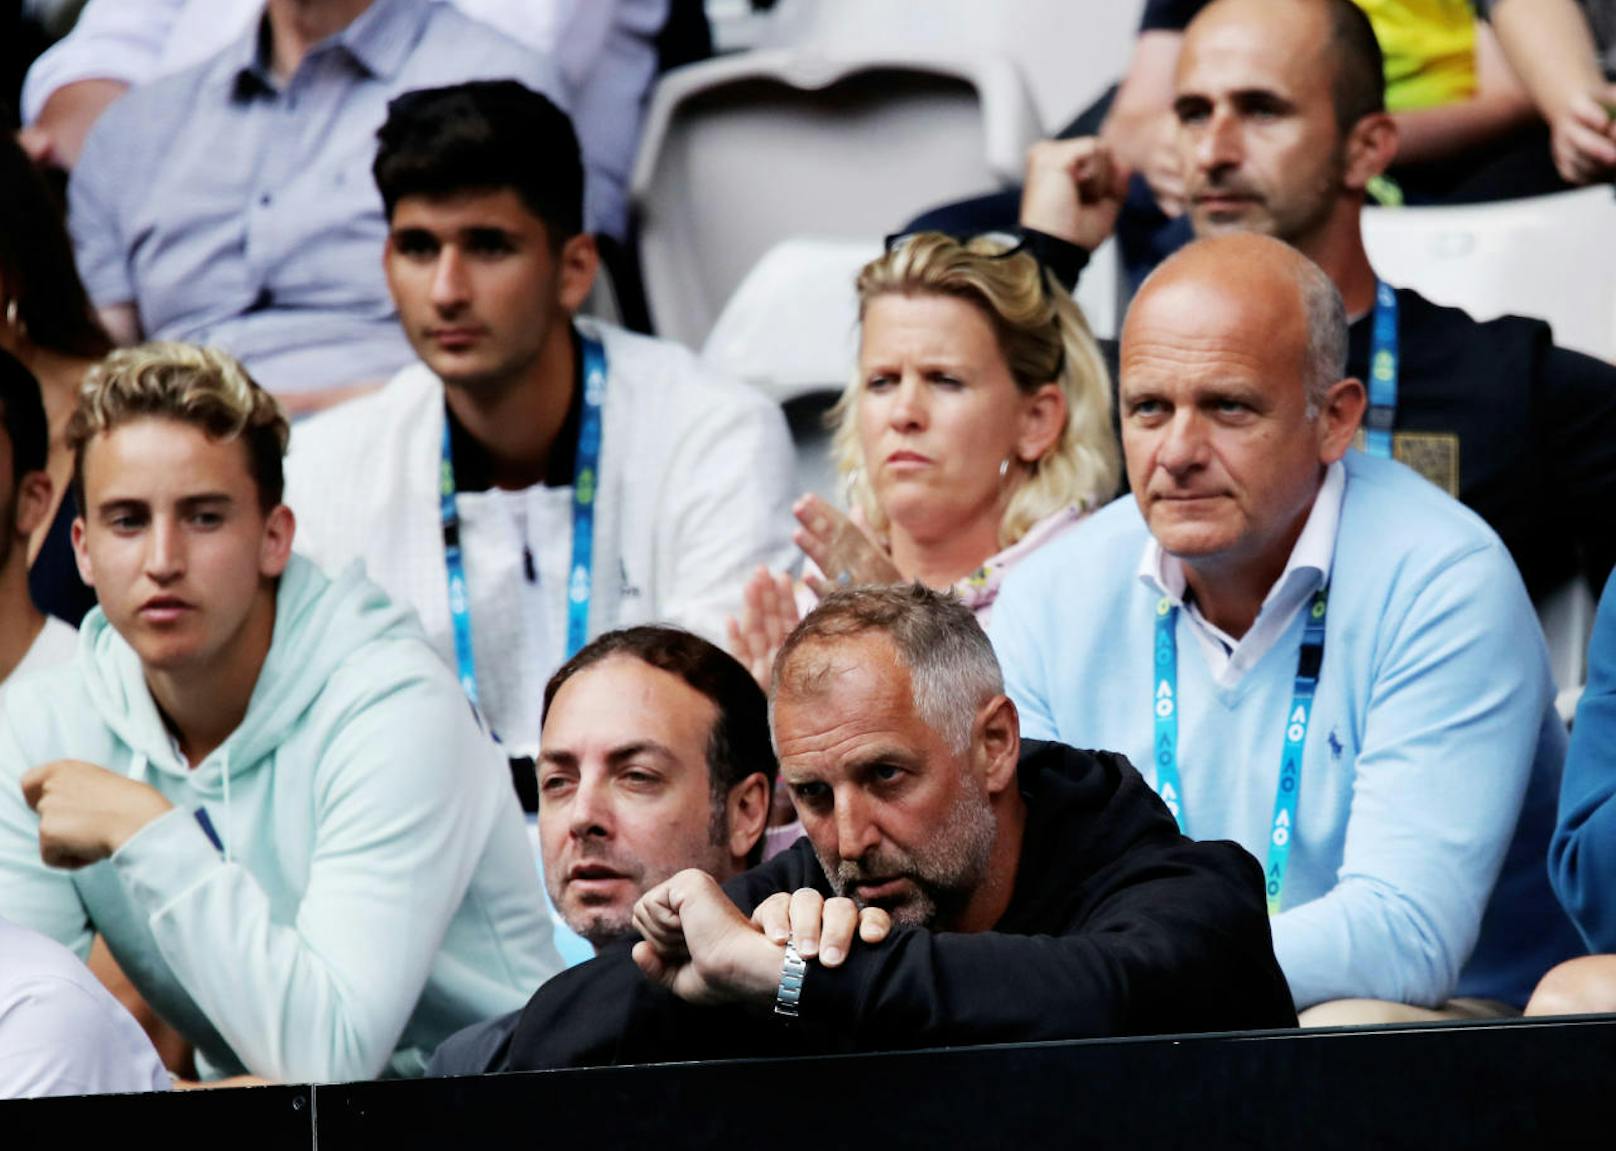 Im Vordergrund Thomas Muster - er wurde als Trainer während den Australian Open ausgemustert. Im hellblauen Hemd rechts über ihm Manager Herwig Straka. Ganz links Bruder Moritz Thiem, links neben Muster Trainer Nicolas Massu, dahinter Karin Thiem.